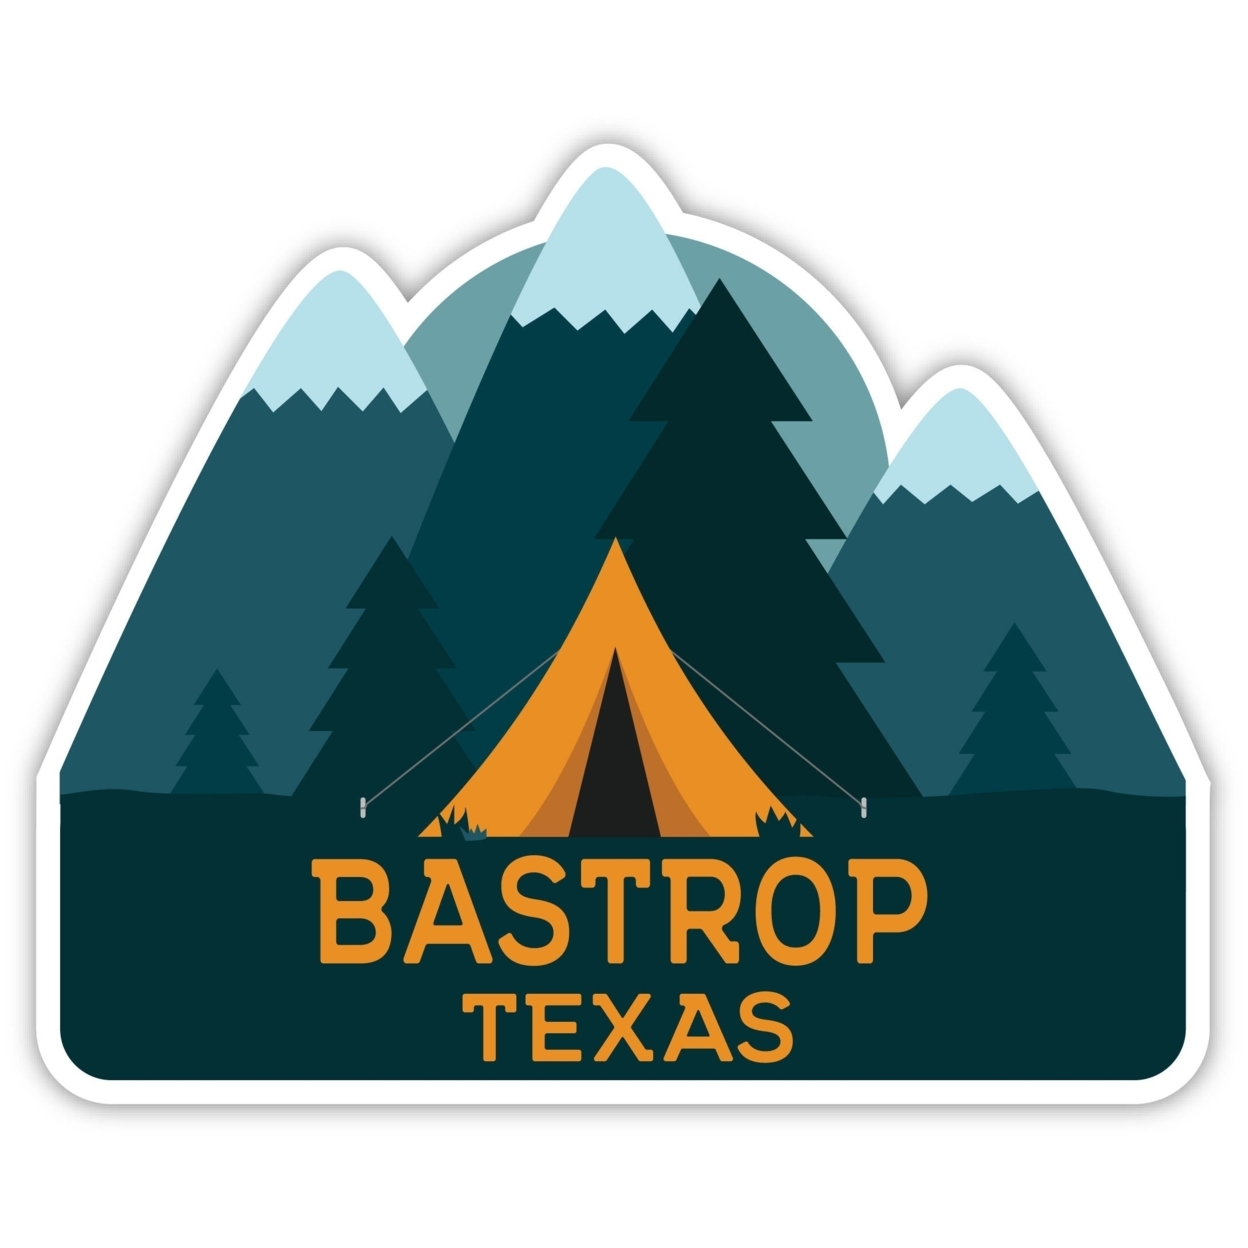 Bastrop Texas Souvenir Decorative Stickers (Choose Theme And Size) - Single Unit, 10-Inch, Tent